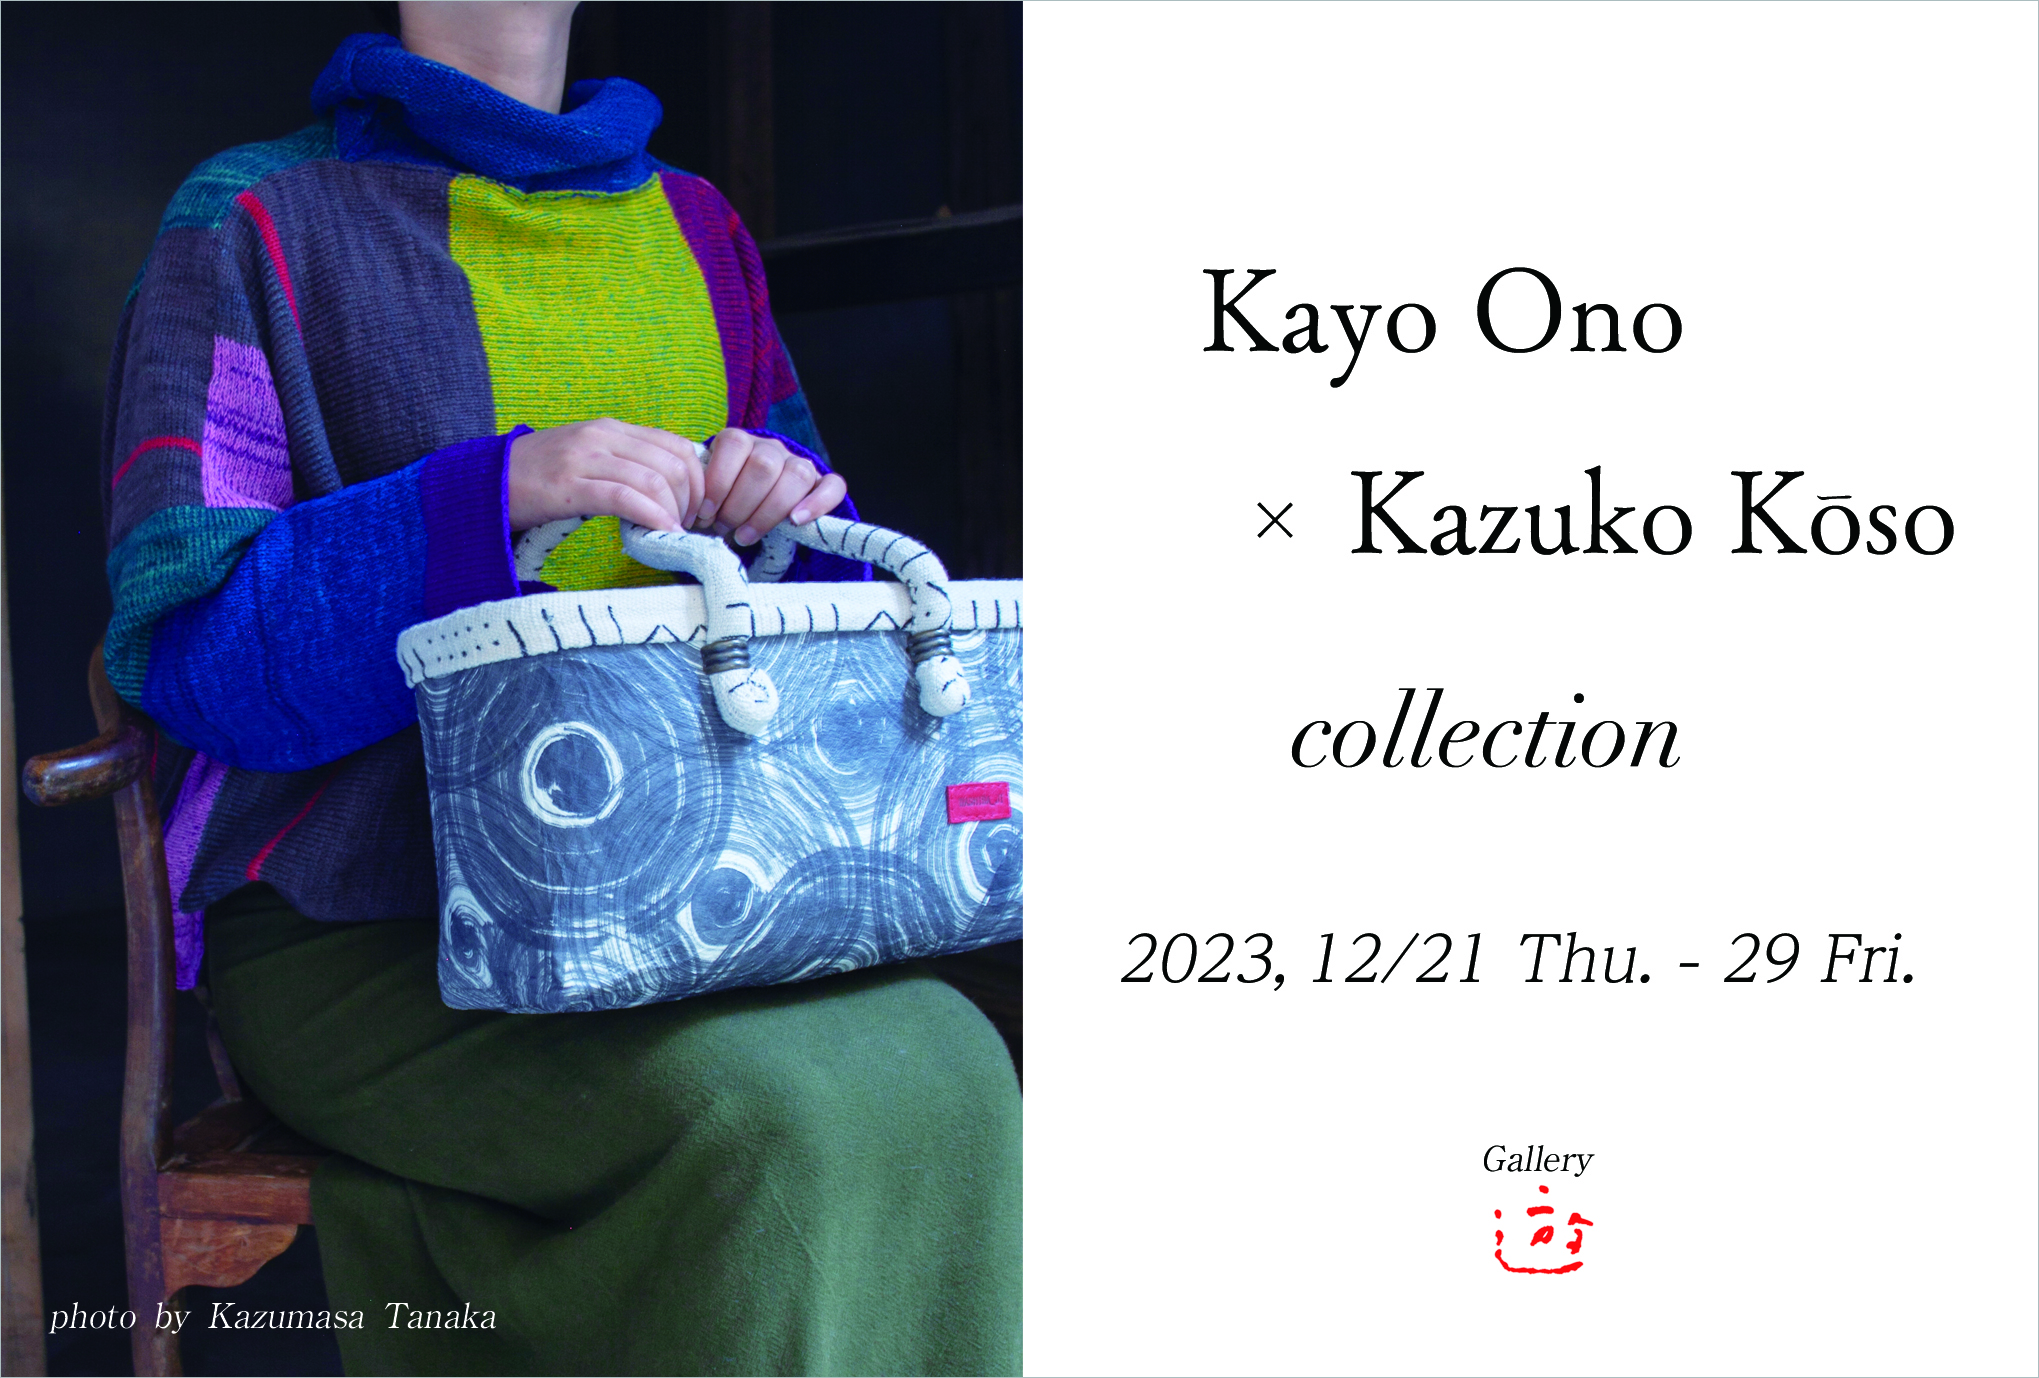 Kayo Ono × Kazuko Koso collection